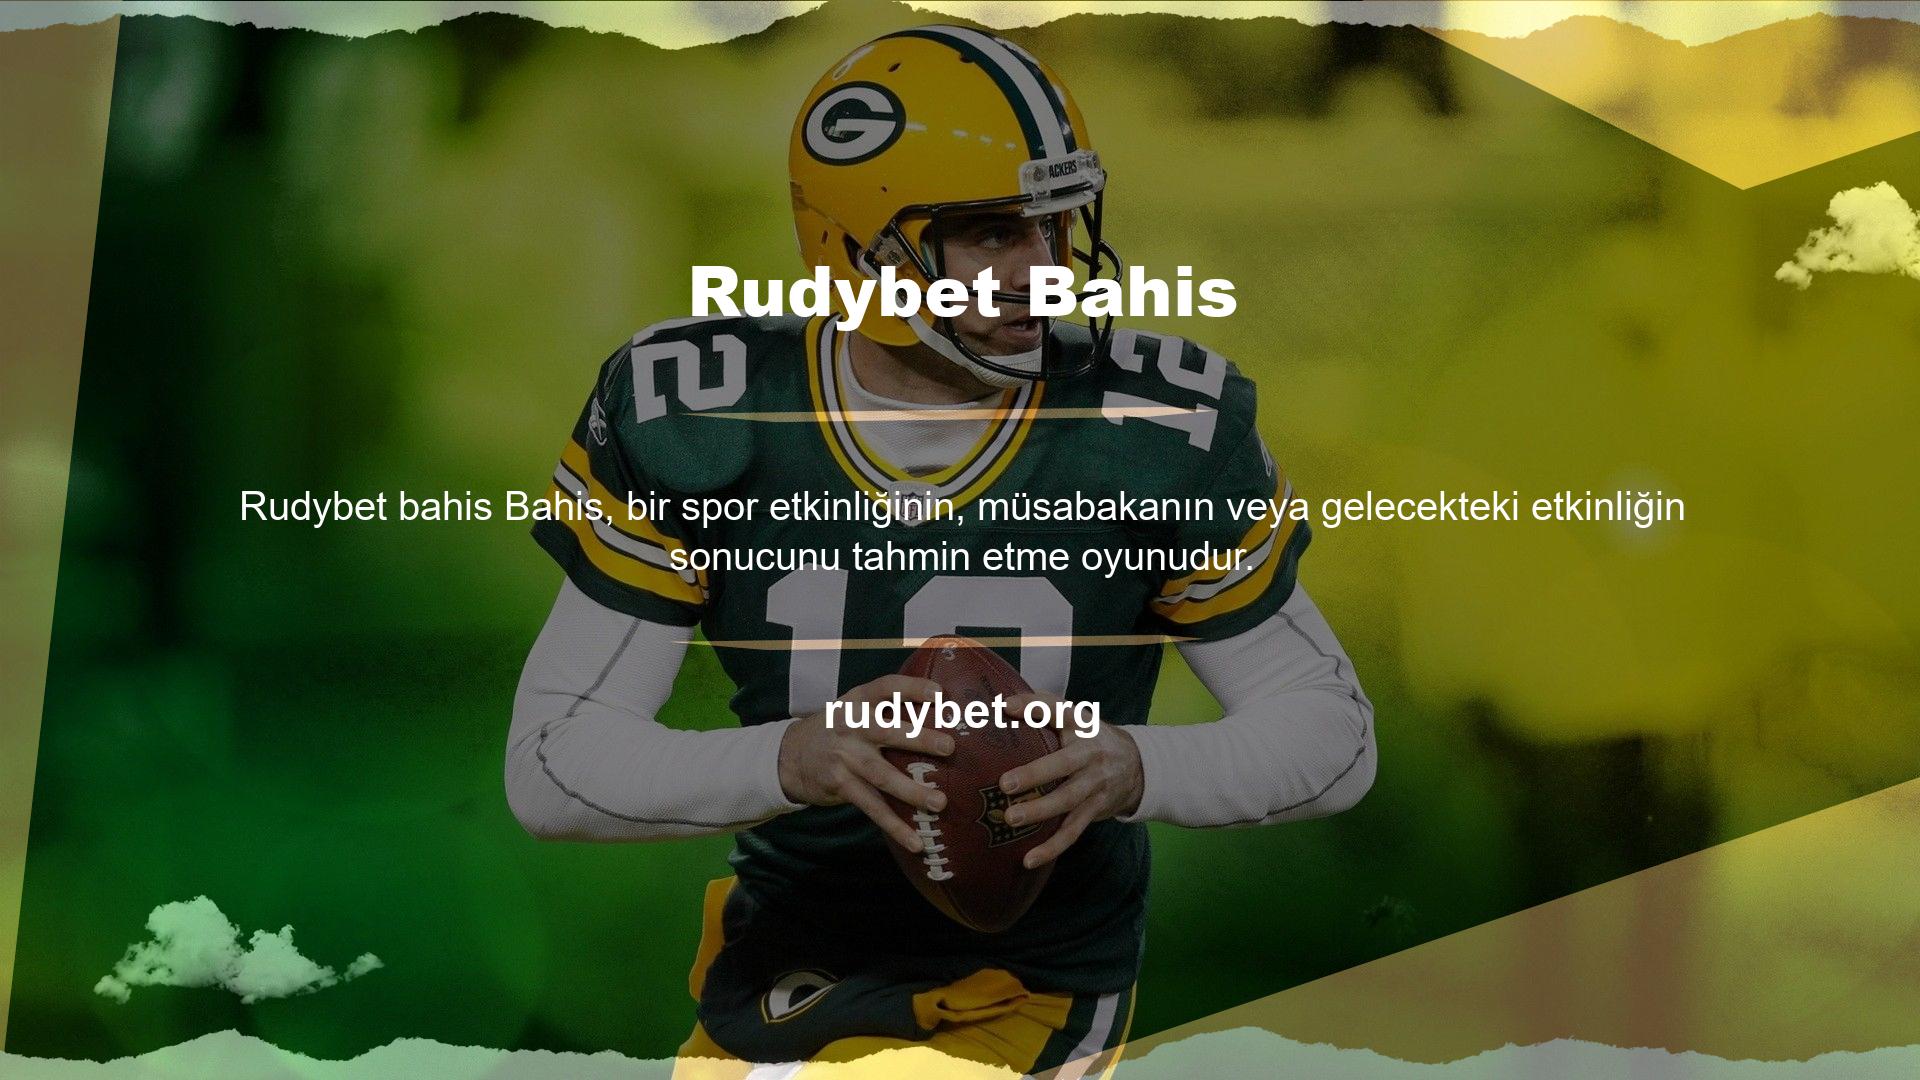 Rudybet, üyelerine her gün onlarca farklı spor dalında bahis seçeneği sunan özel bir sisteme sahiptir